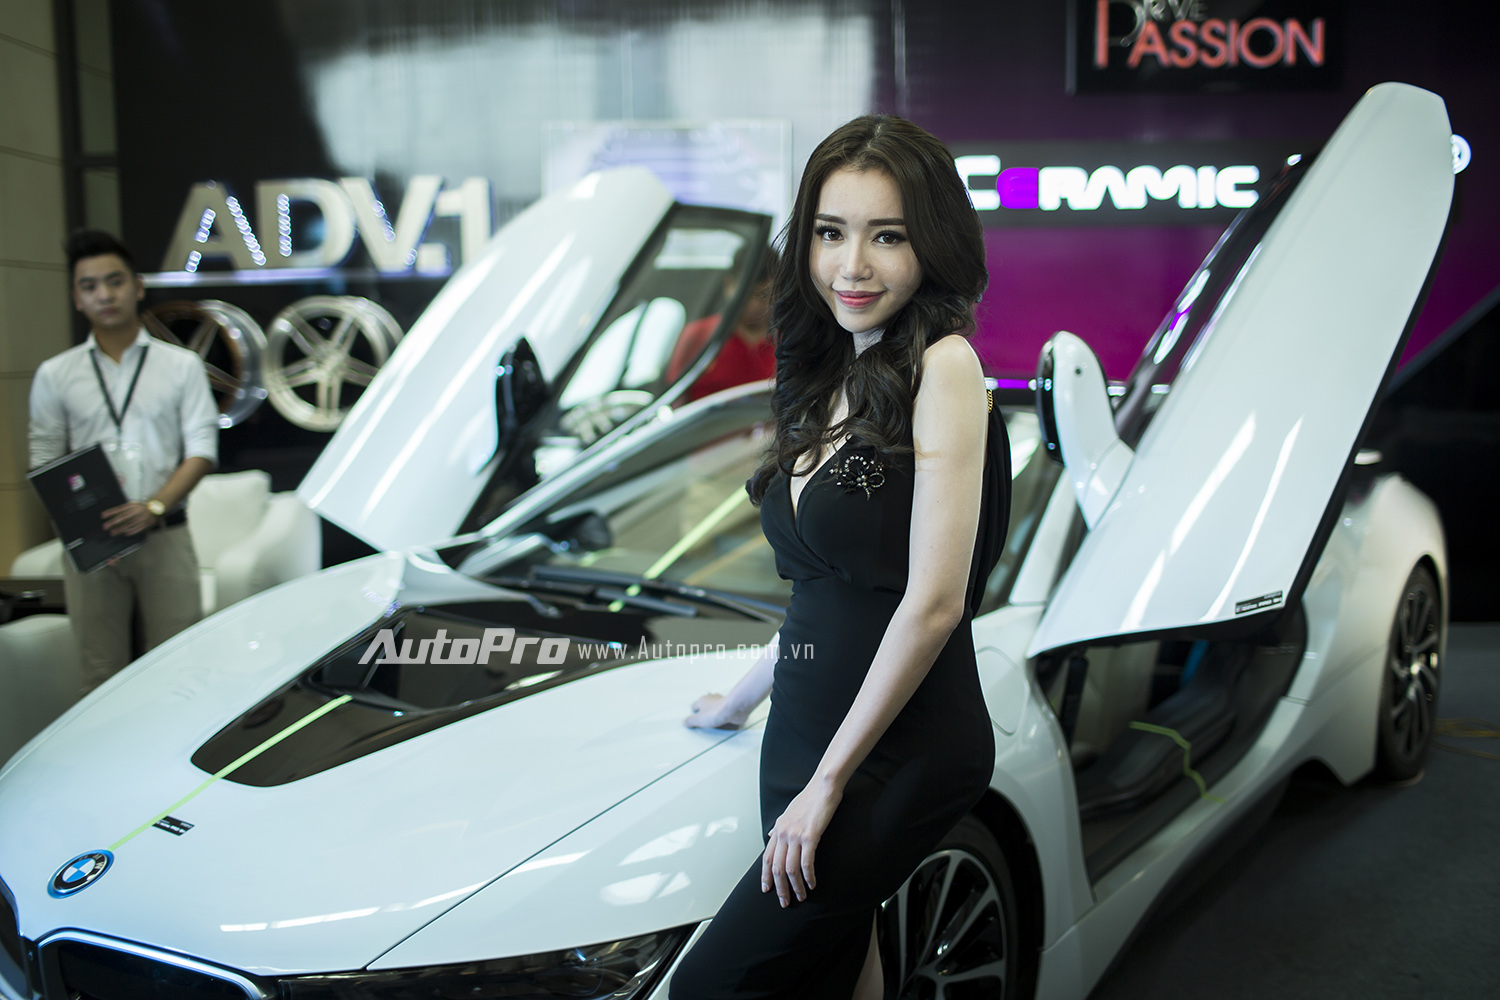 
Tại BMW World Vietnam 2016, Elly Trần khá nhẹ nhàng trong bộ đồ đen.
